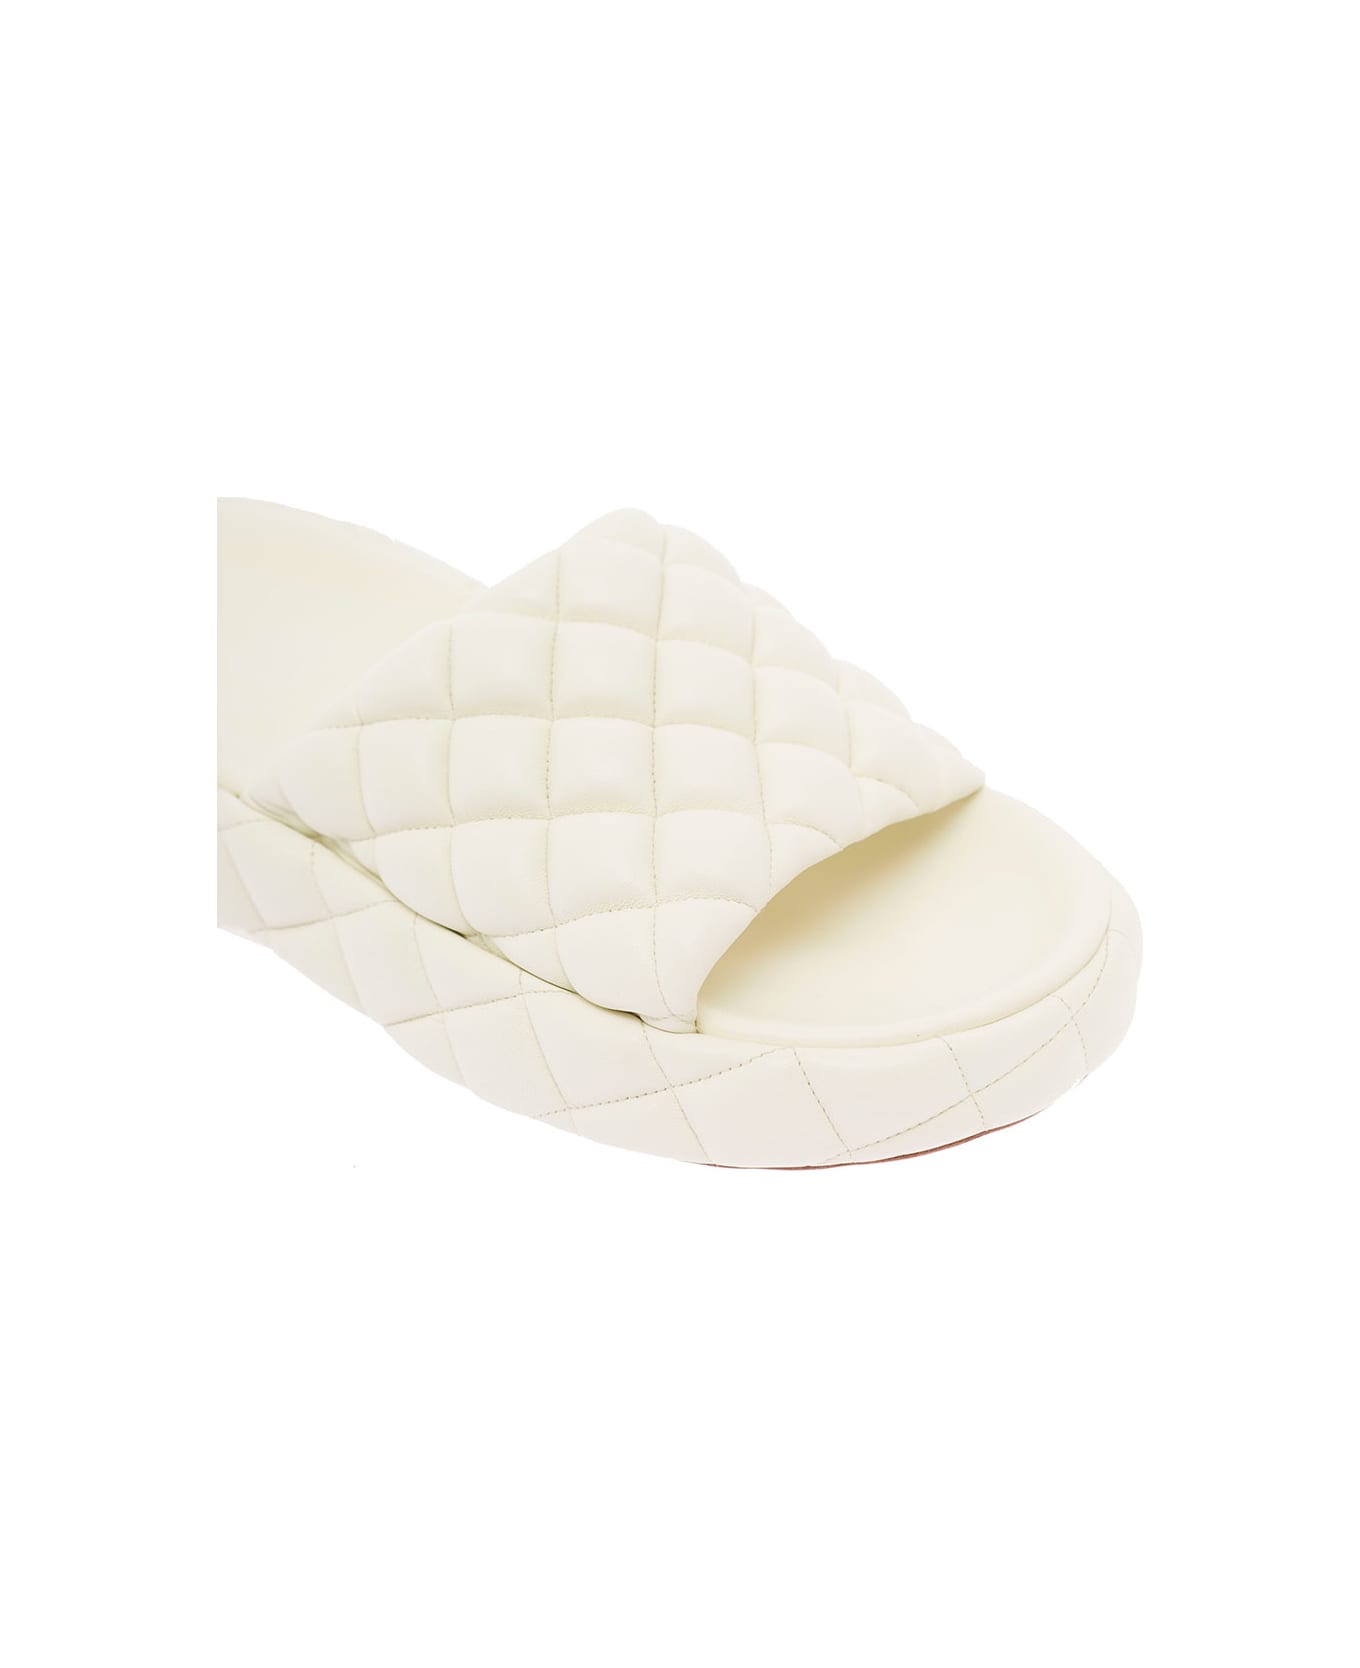 Bottega Veneta White Quilted Leather Slide Sandals Bottega Veneta Woman - White サンダル